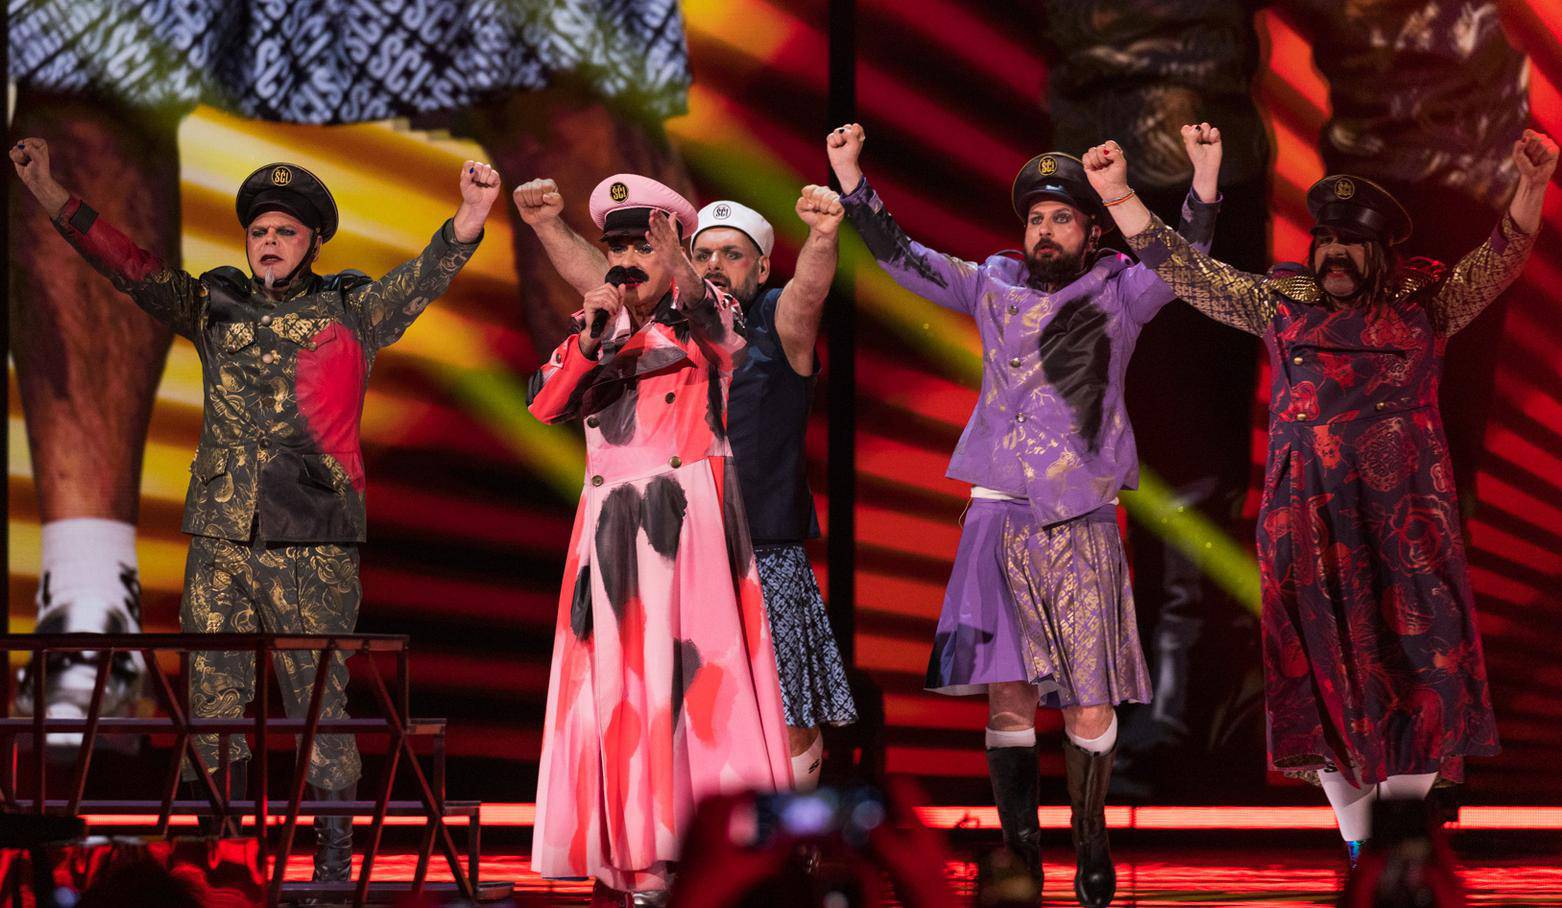 Spektakl koji je pratilo više od 160 milijuna ljudi: Eurosong je dokaz da glazba ujedinjuje sve!